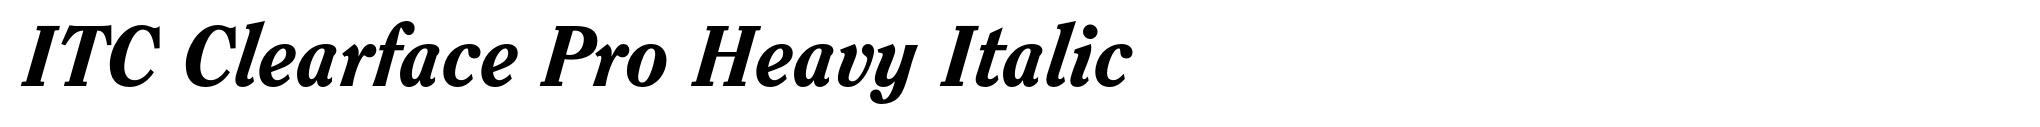 ITC Clearface Pro Heavy Italic image